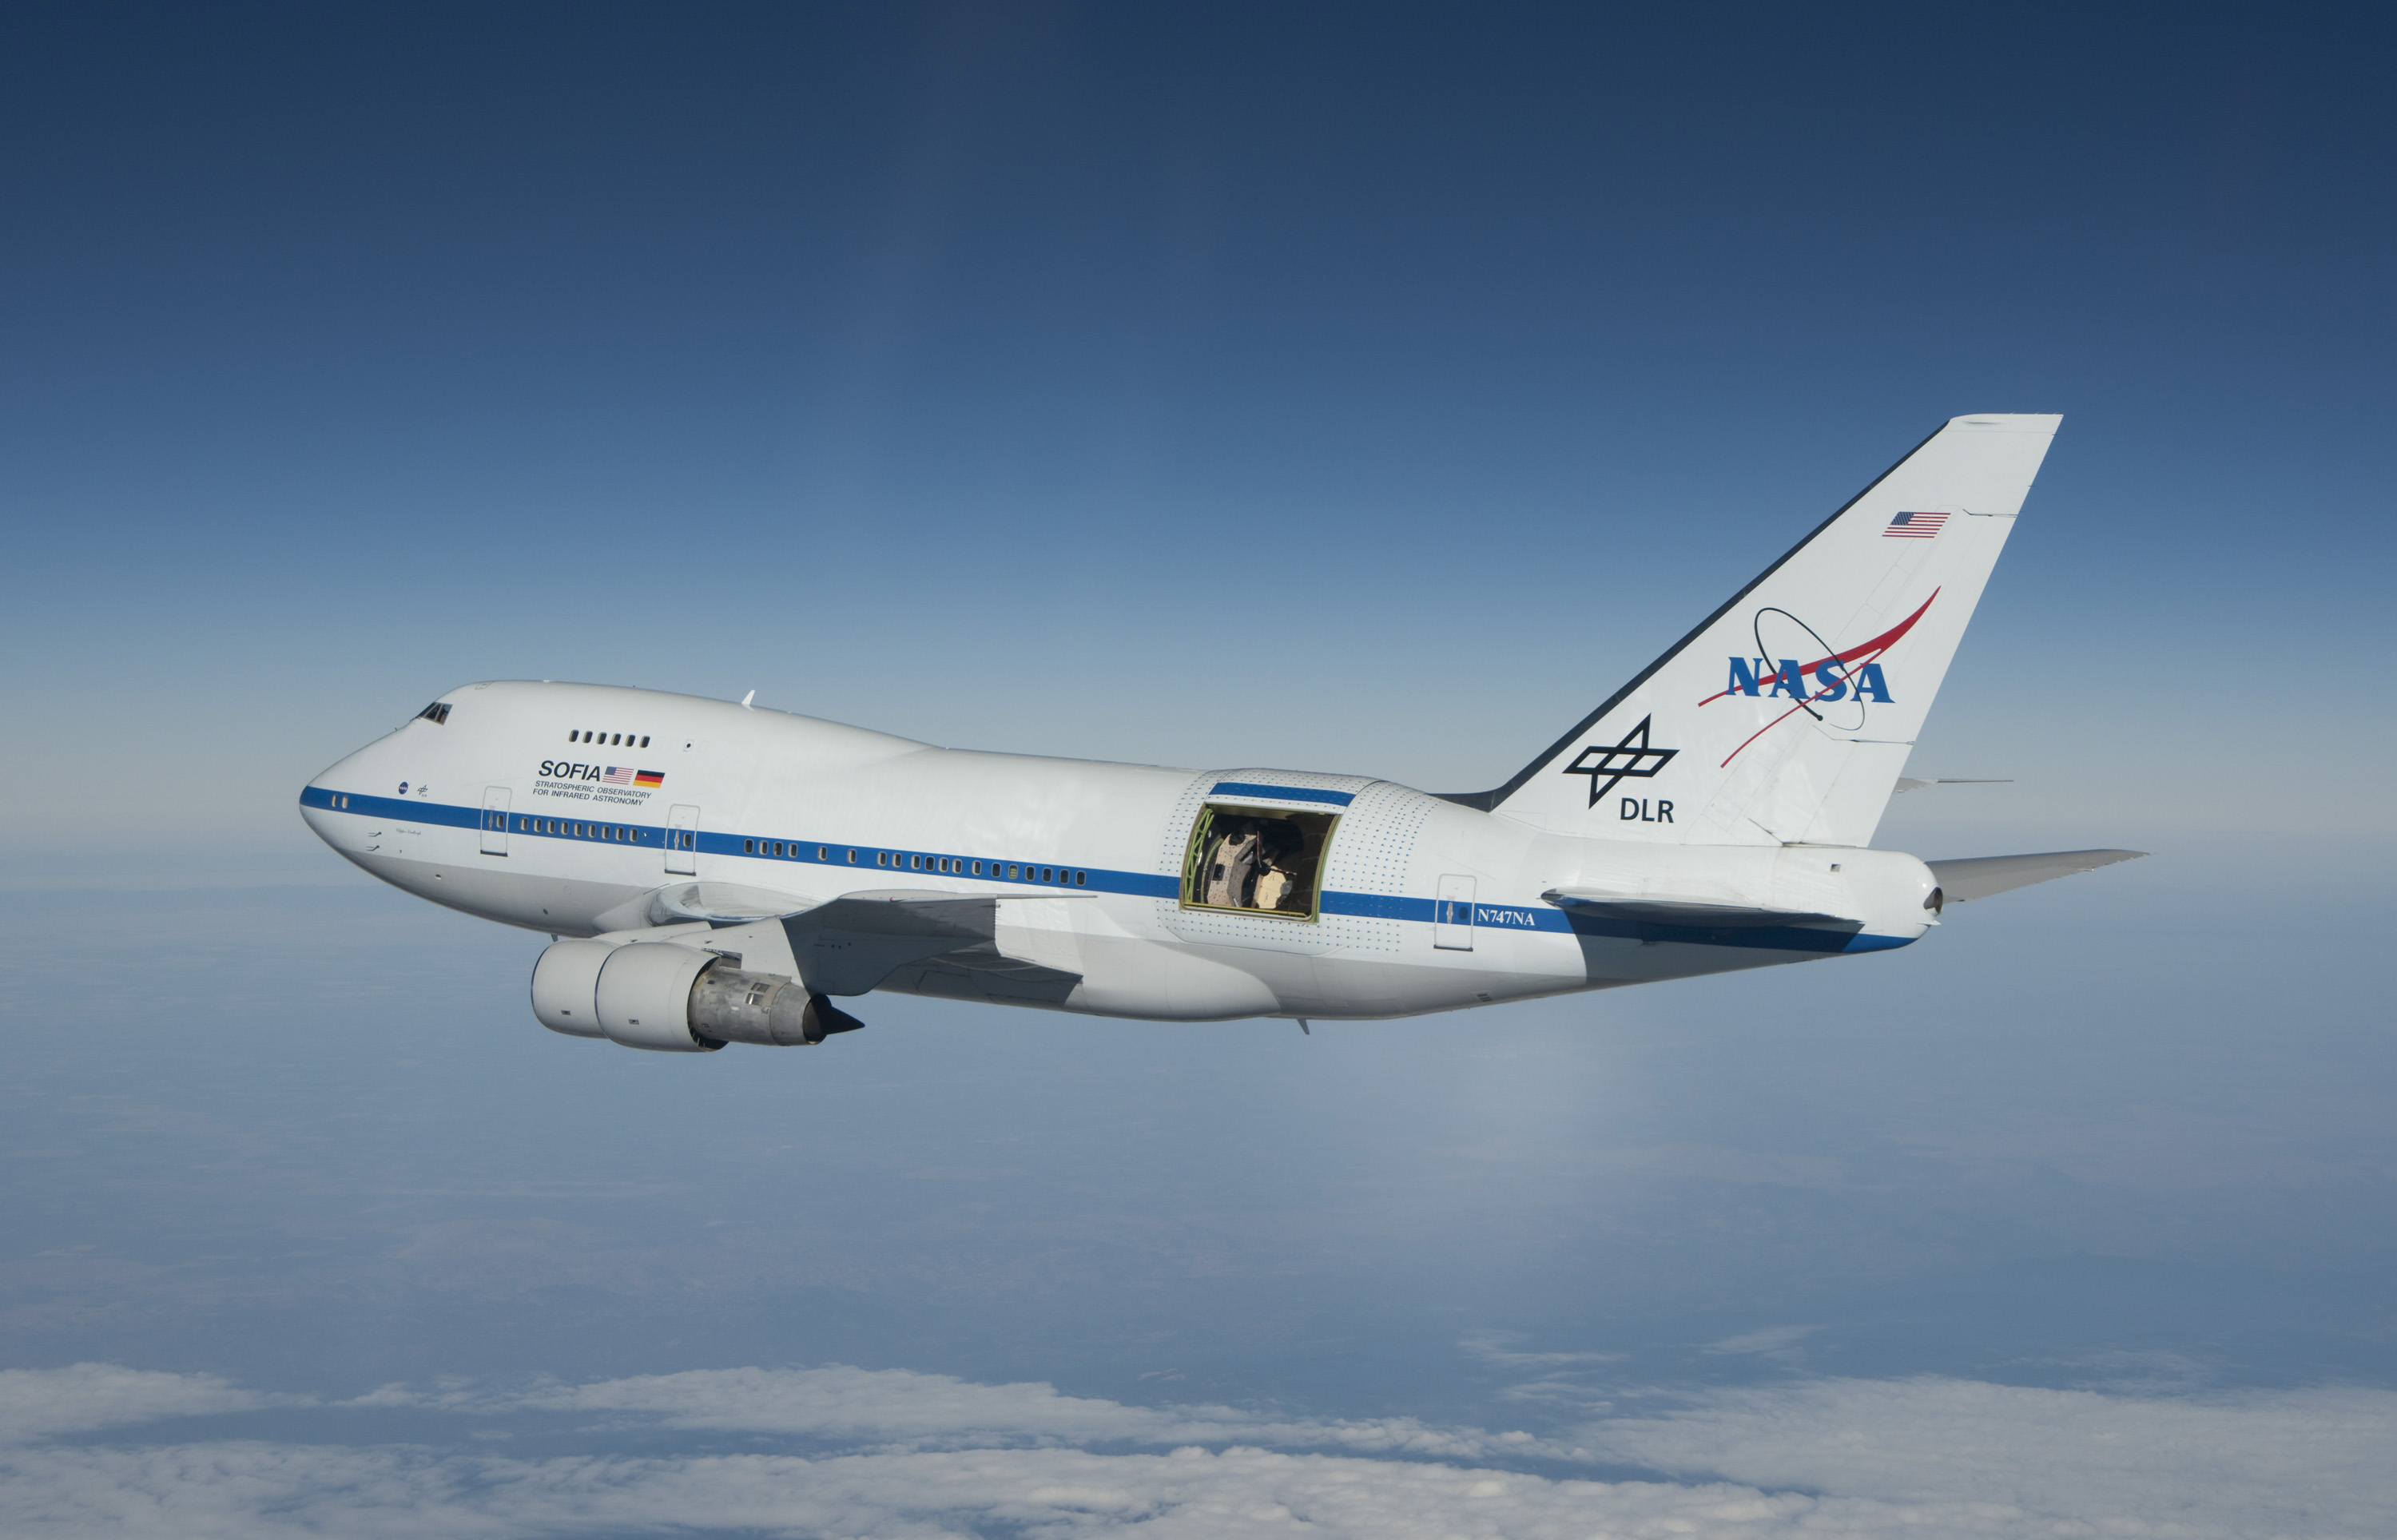 Die Boeing 747-SP mit dem Stratosphären-Observatorium für Infrarot-Astronomie SOFIA, einem Projekt von NASA und DLR (Deutsches Zentrum für Luft- und Raumfahrt). © NASA/USRA